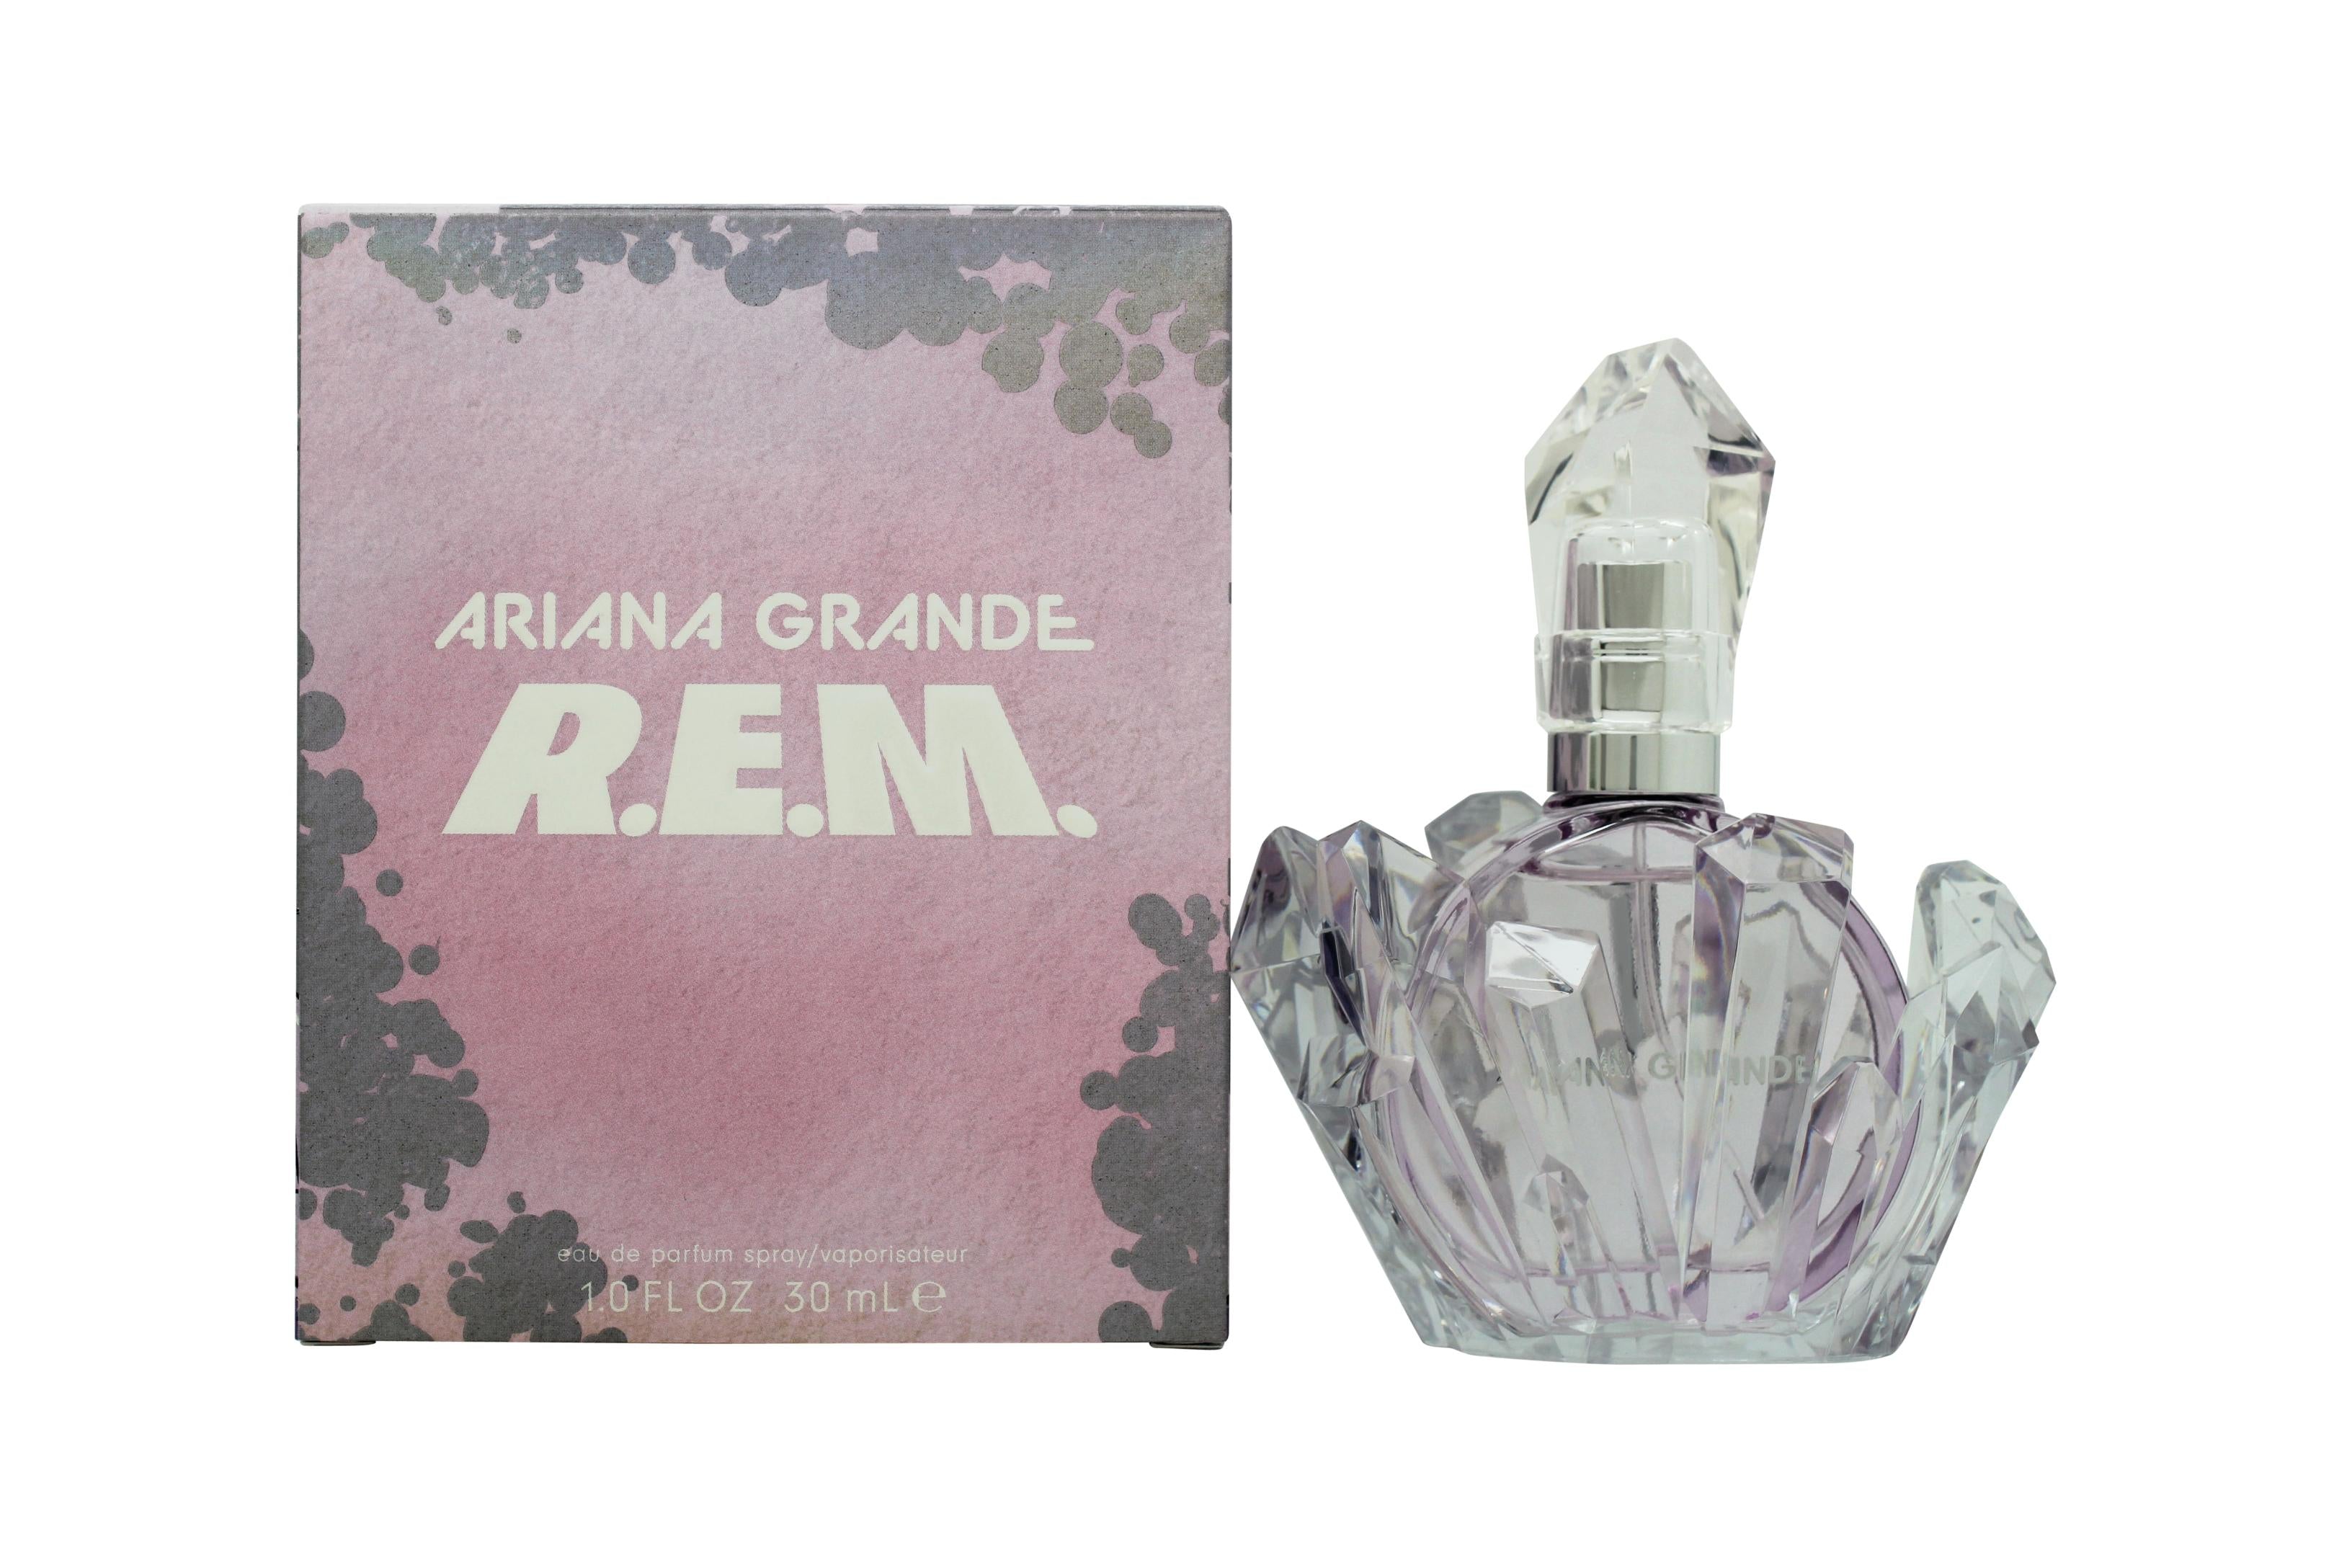 View Ariana Grande REM Eau de Parfum 30ml Spray information